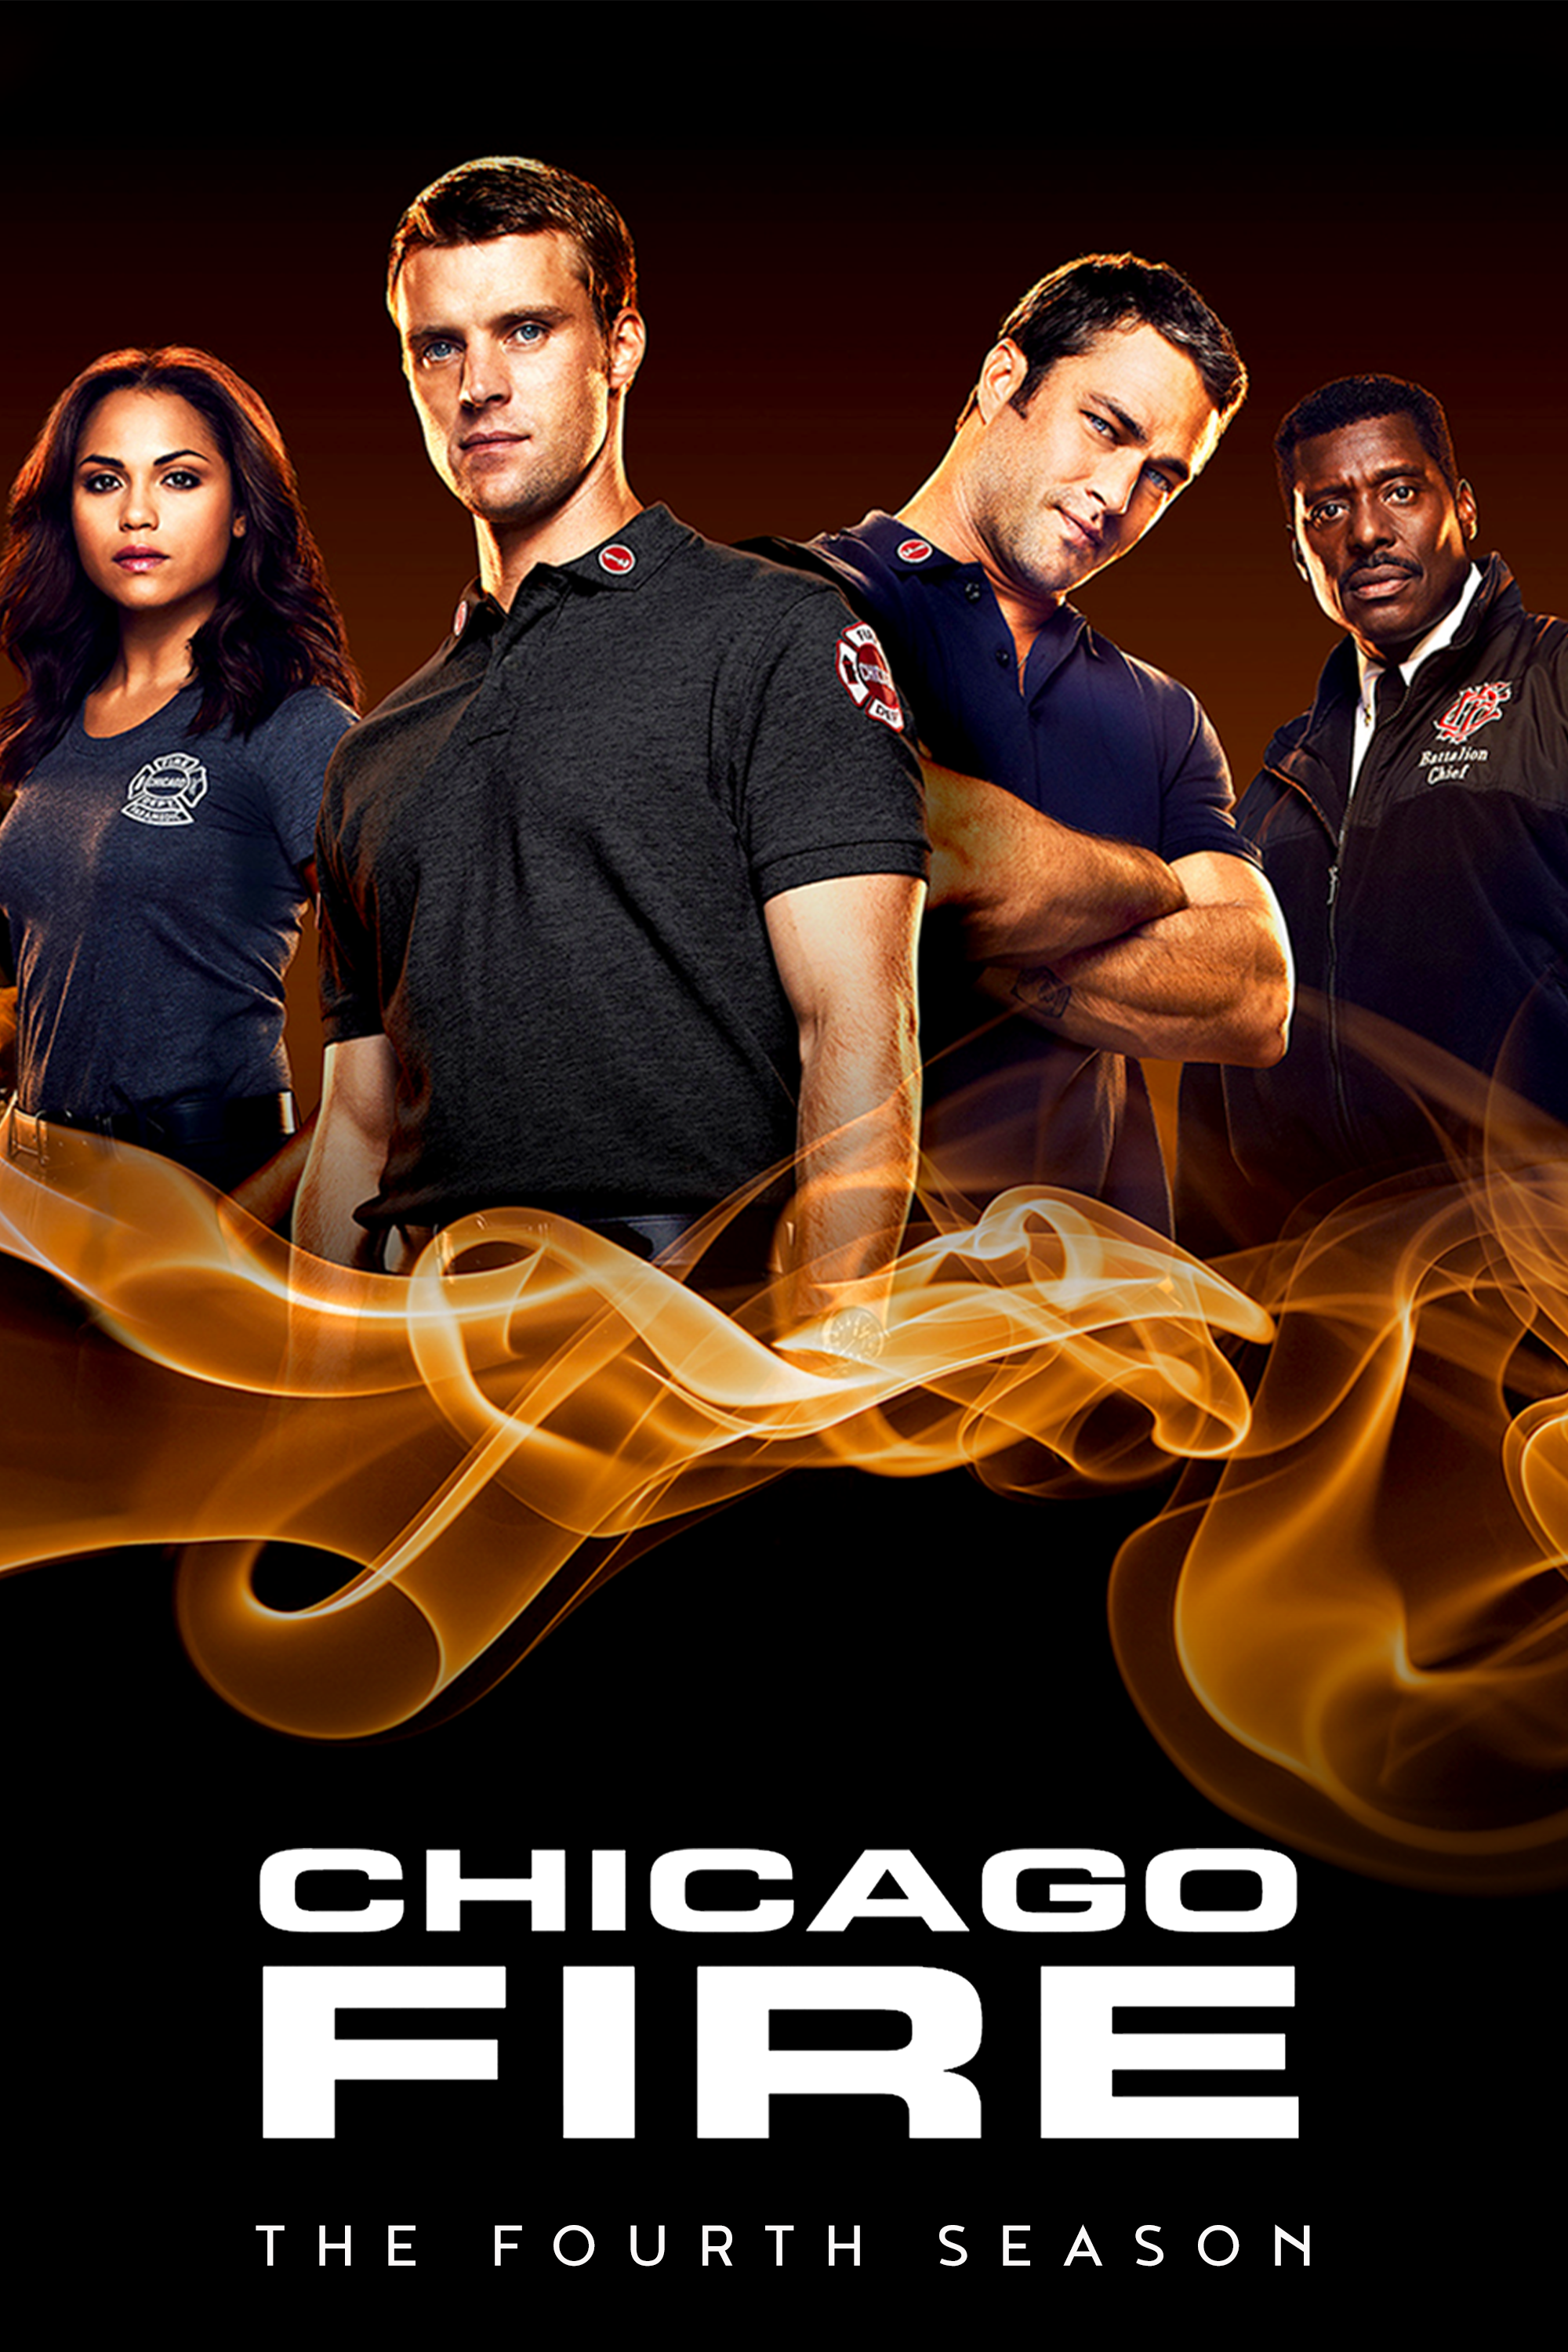 ดูหนังออนไลน์ฟรี Chicago Fire Season 4 EP.7 ชิคาโก้ ไฟร์ หน่วยดับเพลิงท้านรก ซีซั่นที่ 4 ตอนที่ 7